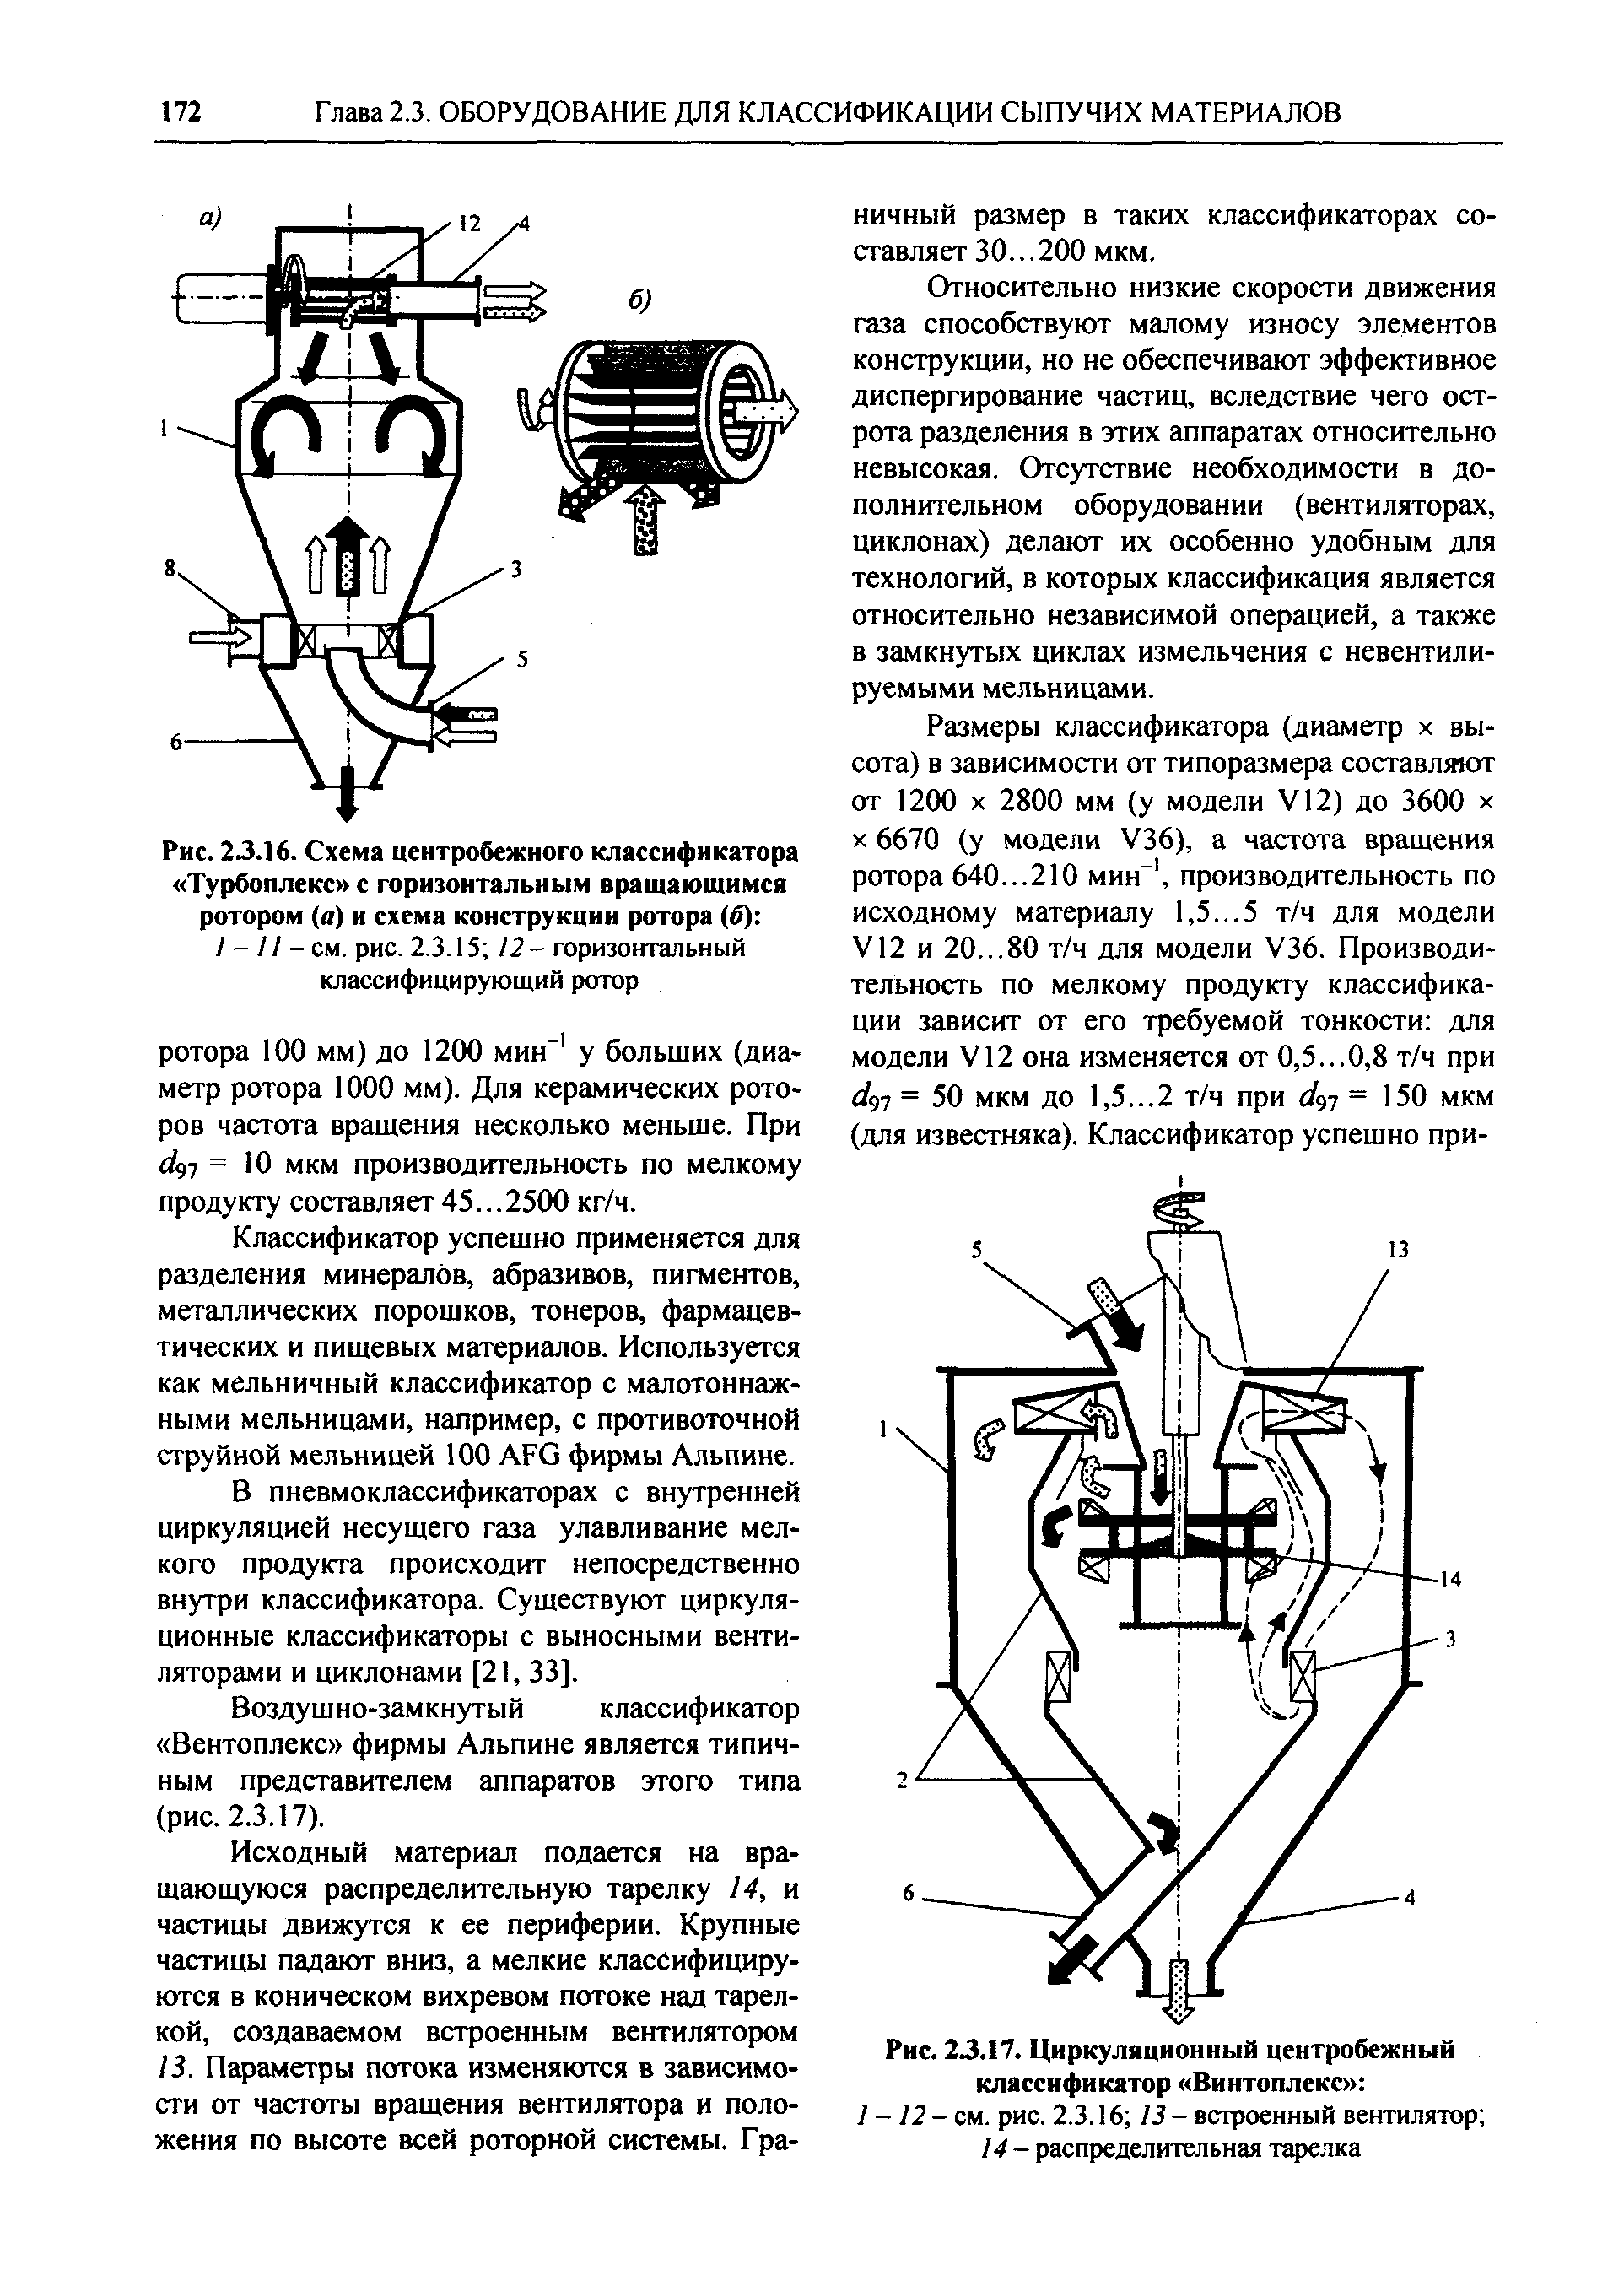 Рис. 2J.I6. Схема центробежного классификатора Турбоплекс с горизонтальным вращающимся ротором (а) и схема конструкции ротора (б) 
